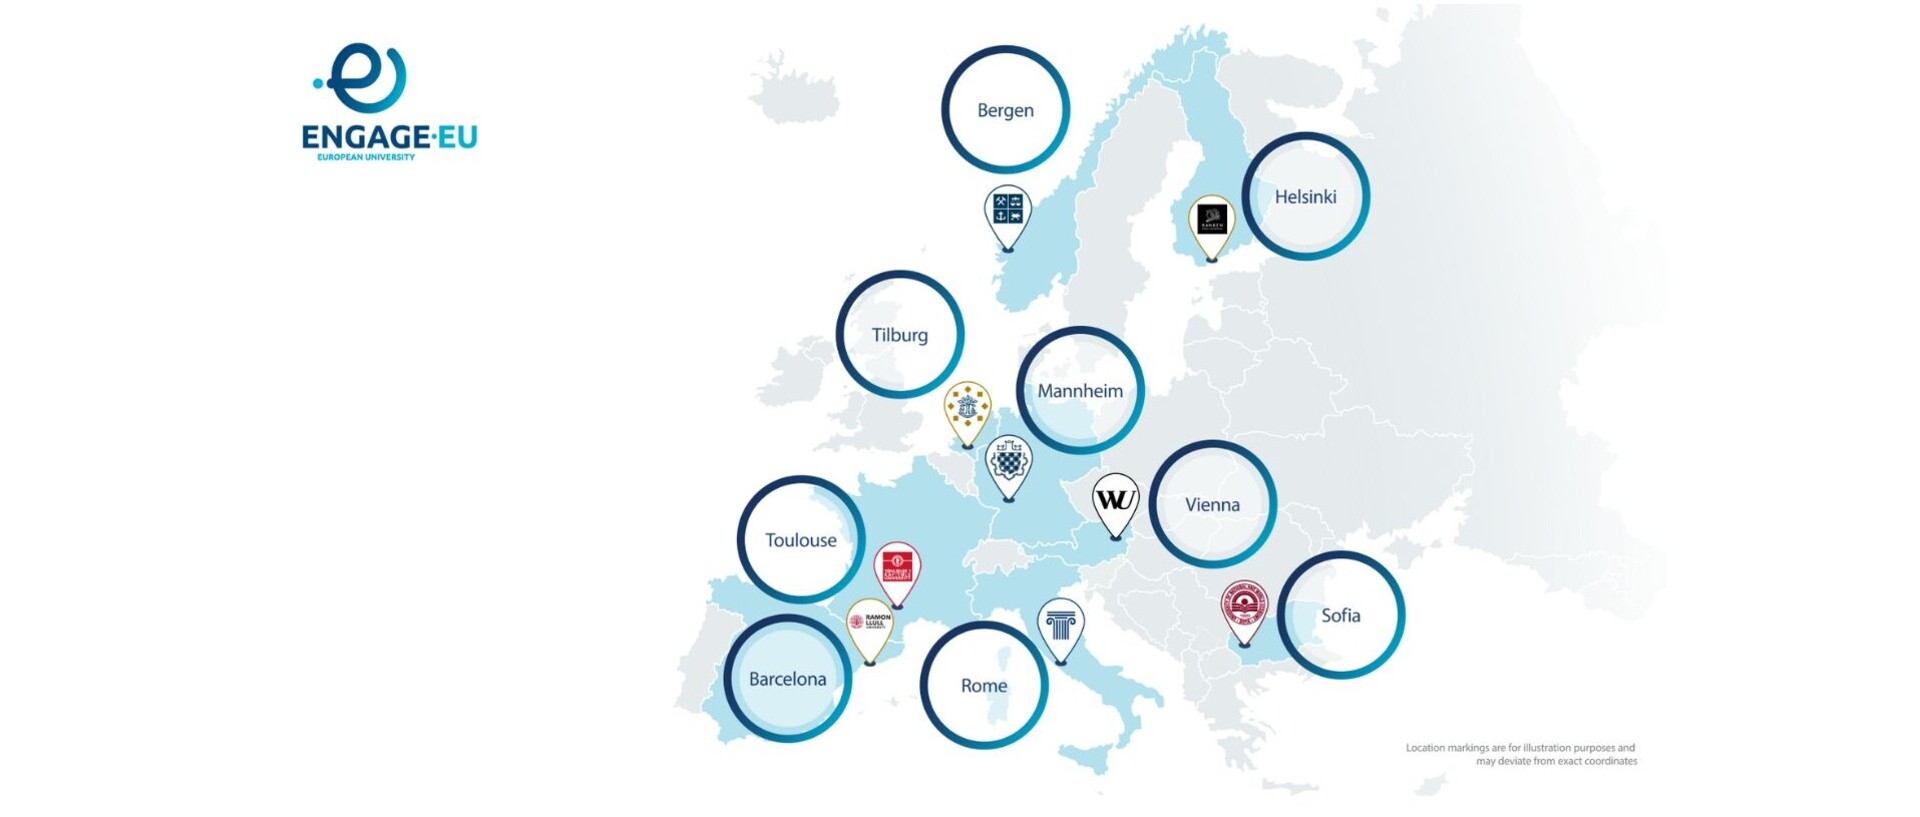 Karte von ENGAGE.EU mit neun eingezeichneten Partner-Universitäten in Bergen, Helsinki, Tilburg, Wien, Sofia, Barcelona, Rom, Toulouse und Mannheim.